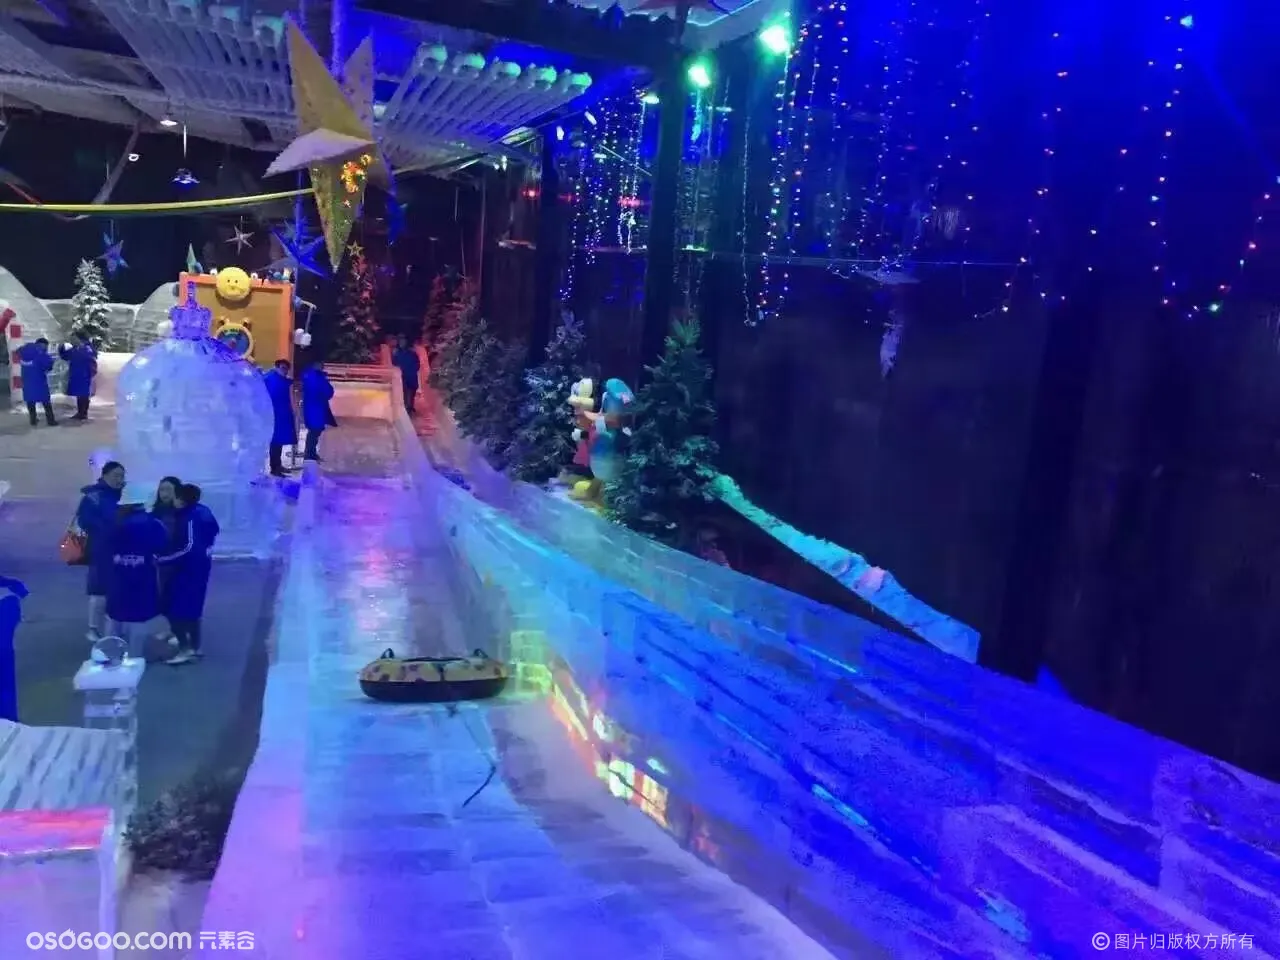 冰雪奇缘冰雕展览公司冰雕展活动景观冰雕乐园制作租赁